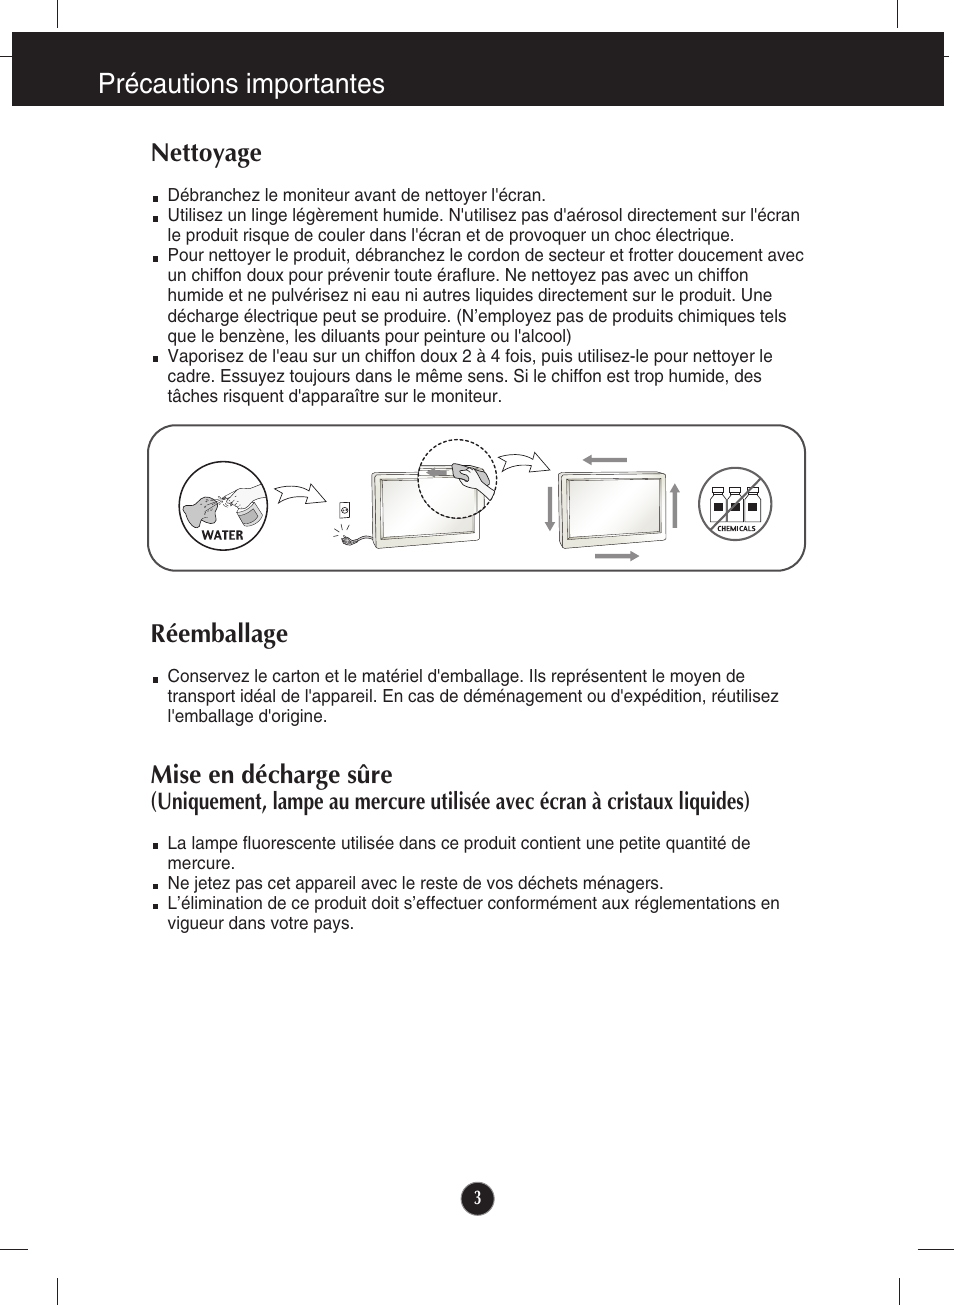 Nettoyage, Réemballage, Précautions importantes | LG E2290V-SN Manuel d'utilisation | Page 4 / 26